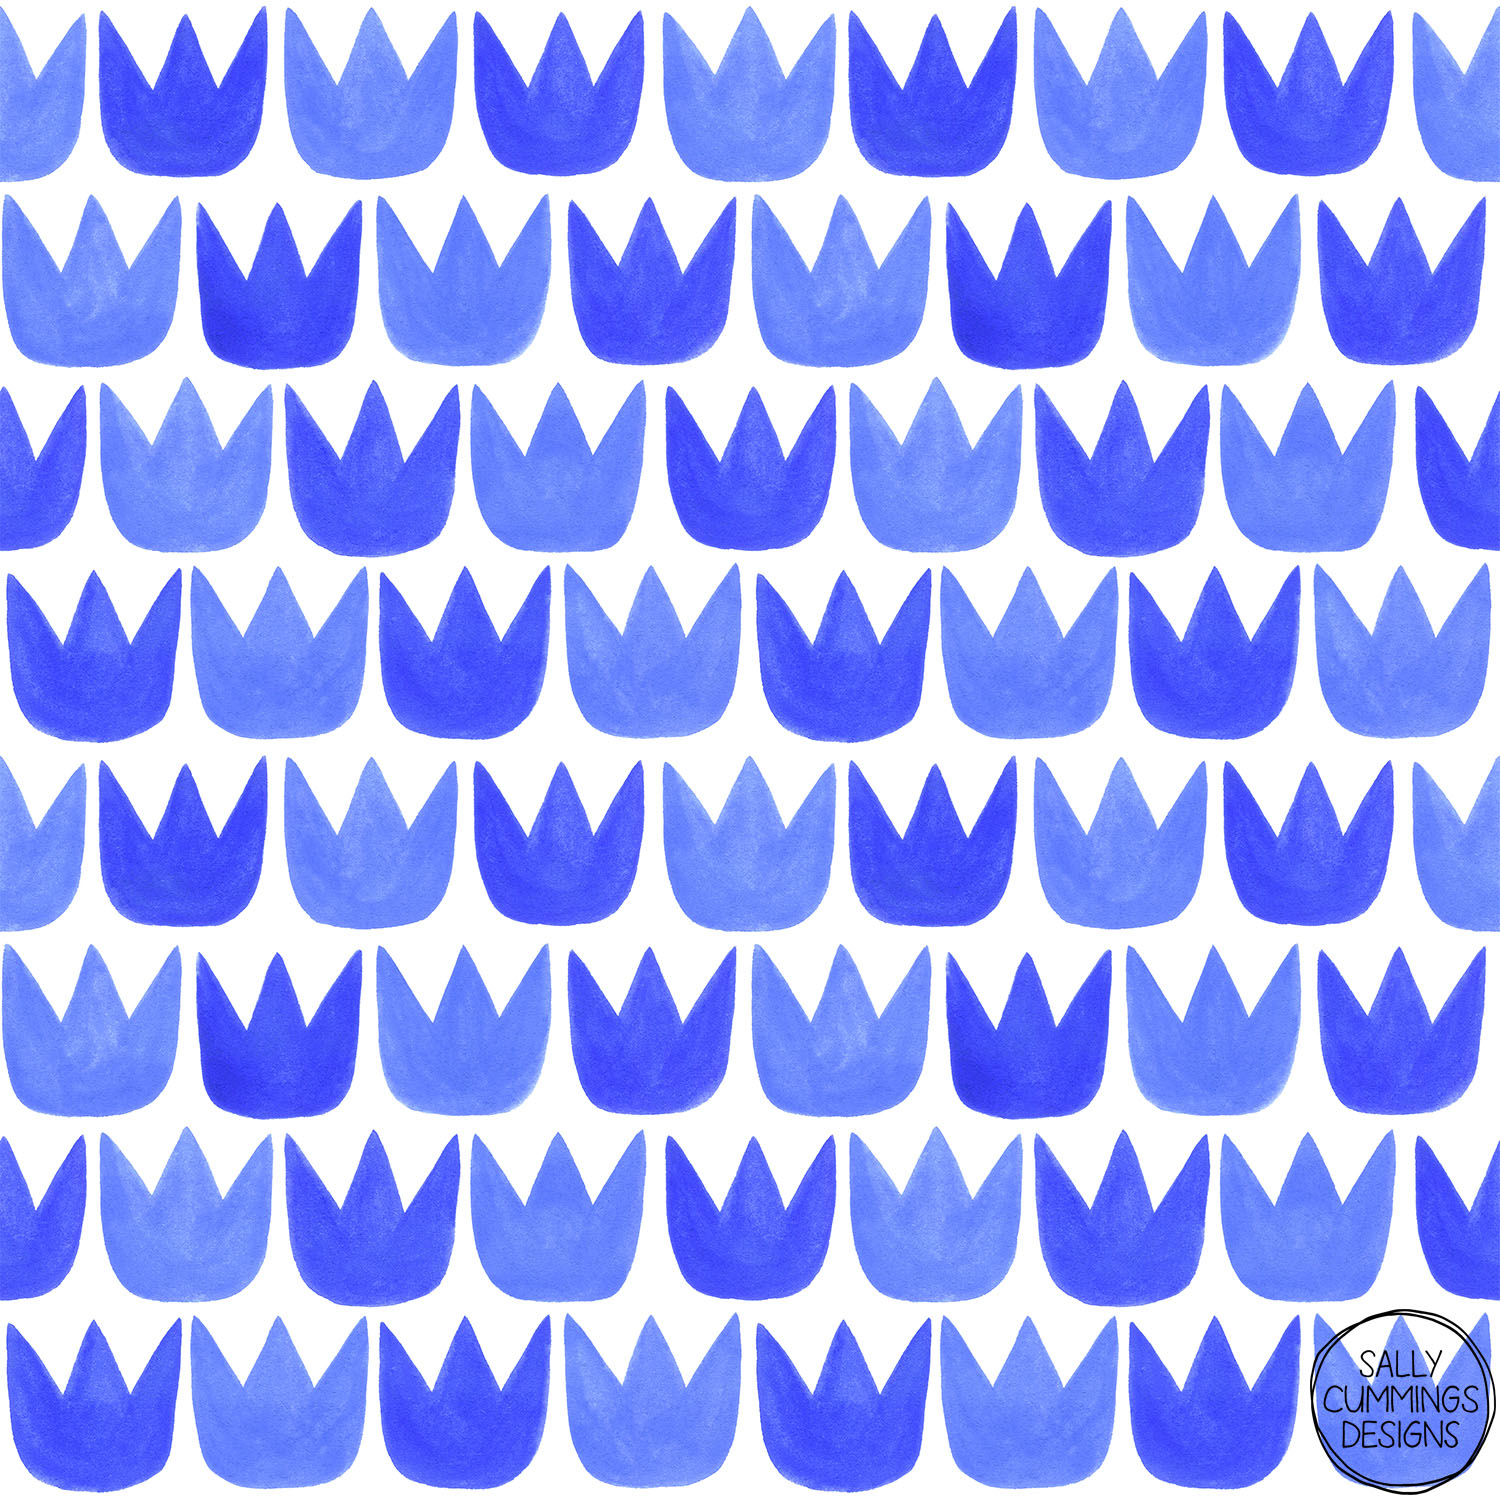 Sally Cummings Designs - Tiptoe Tulips Blue Pattern